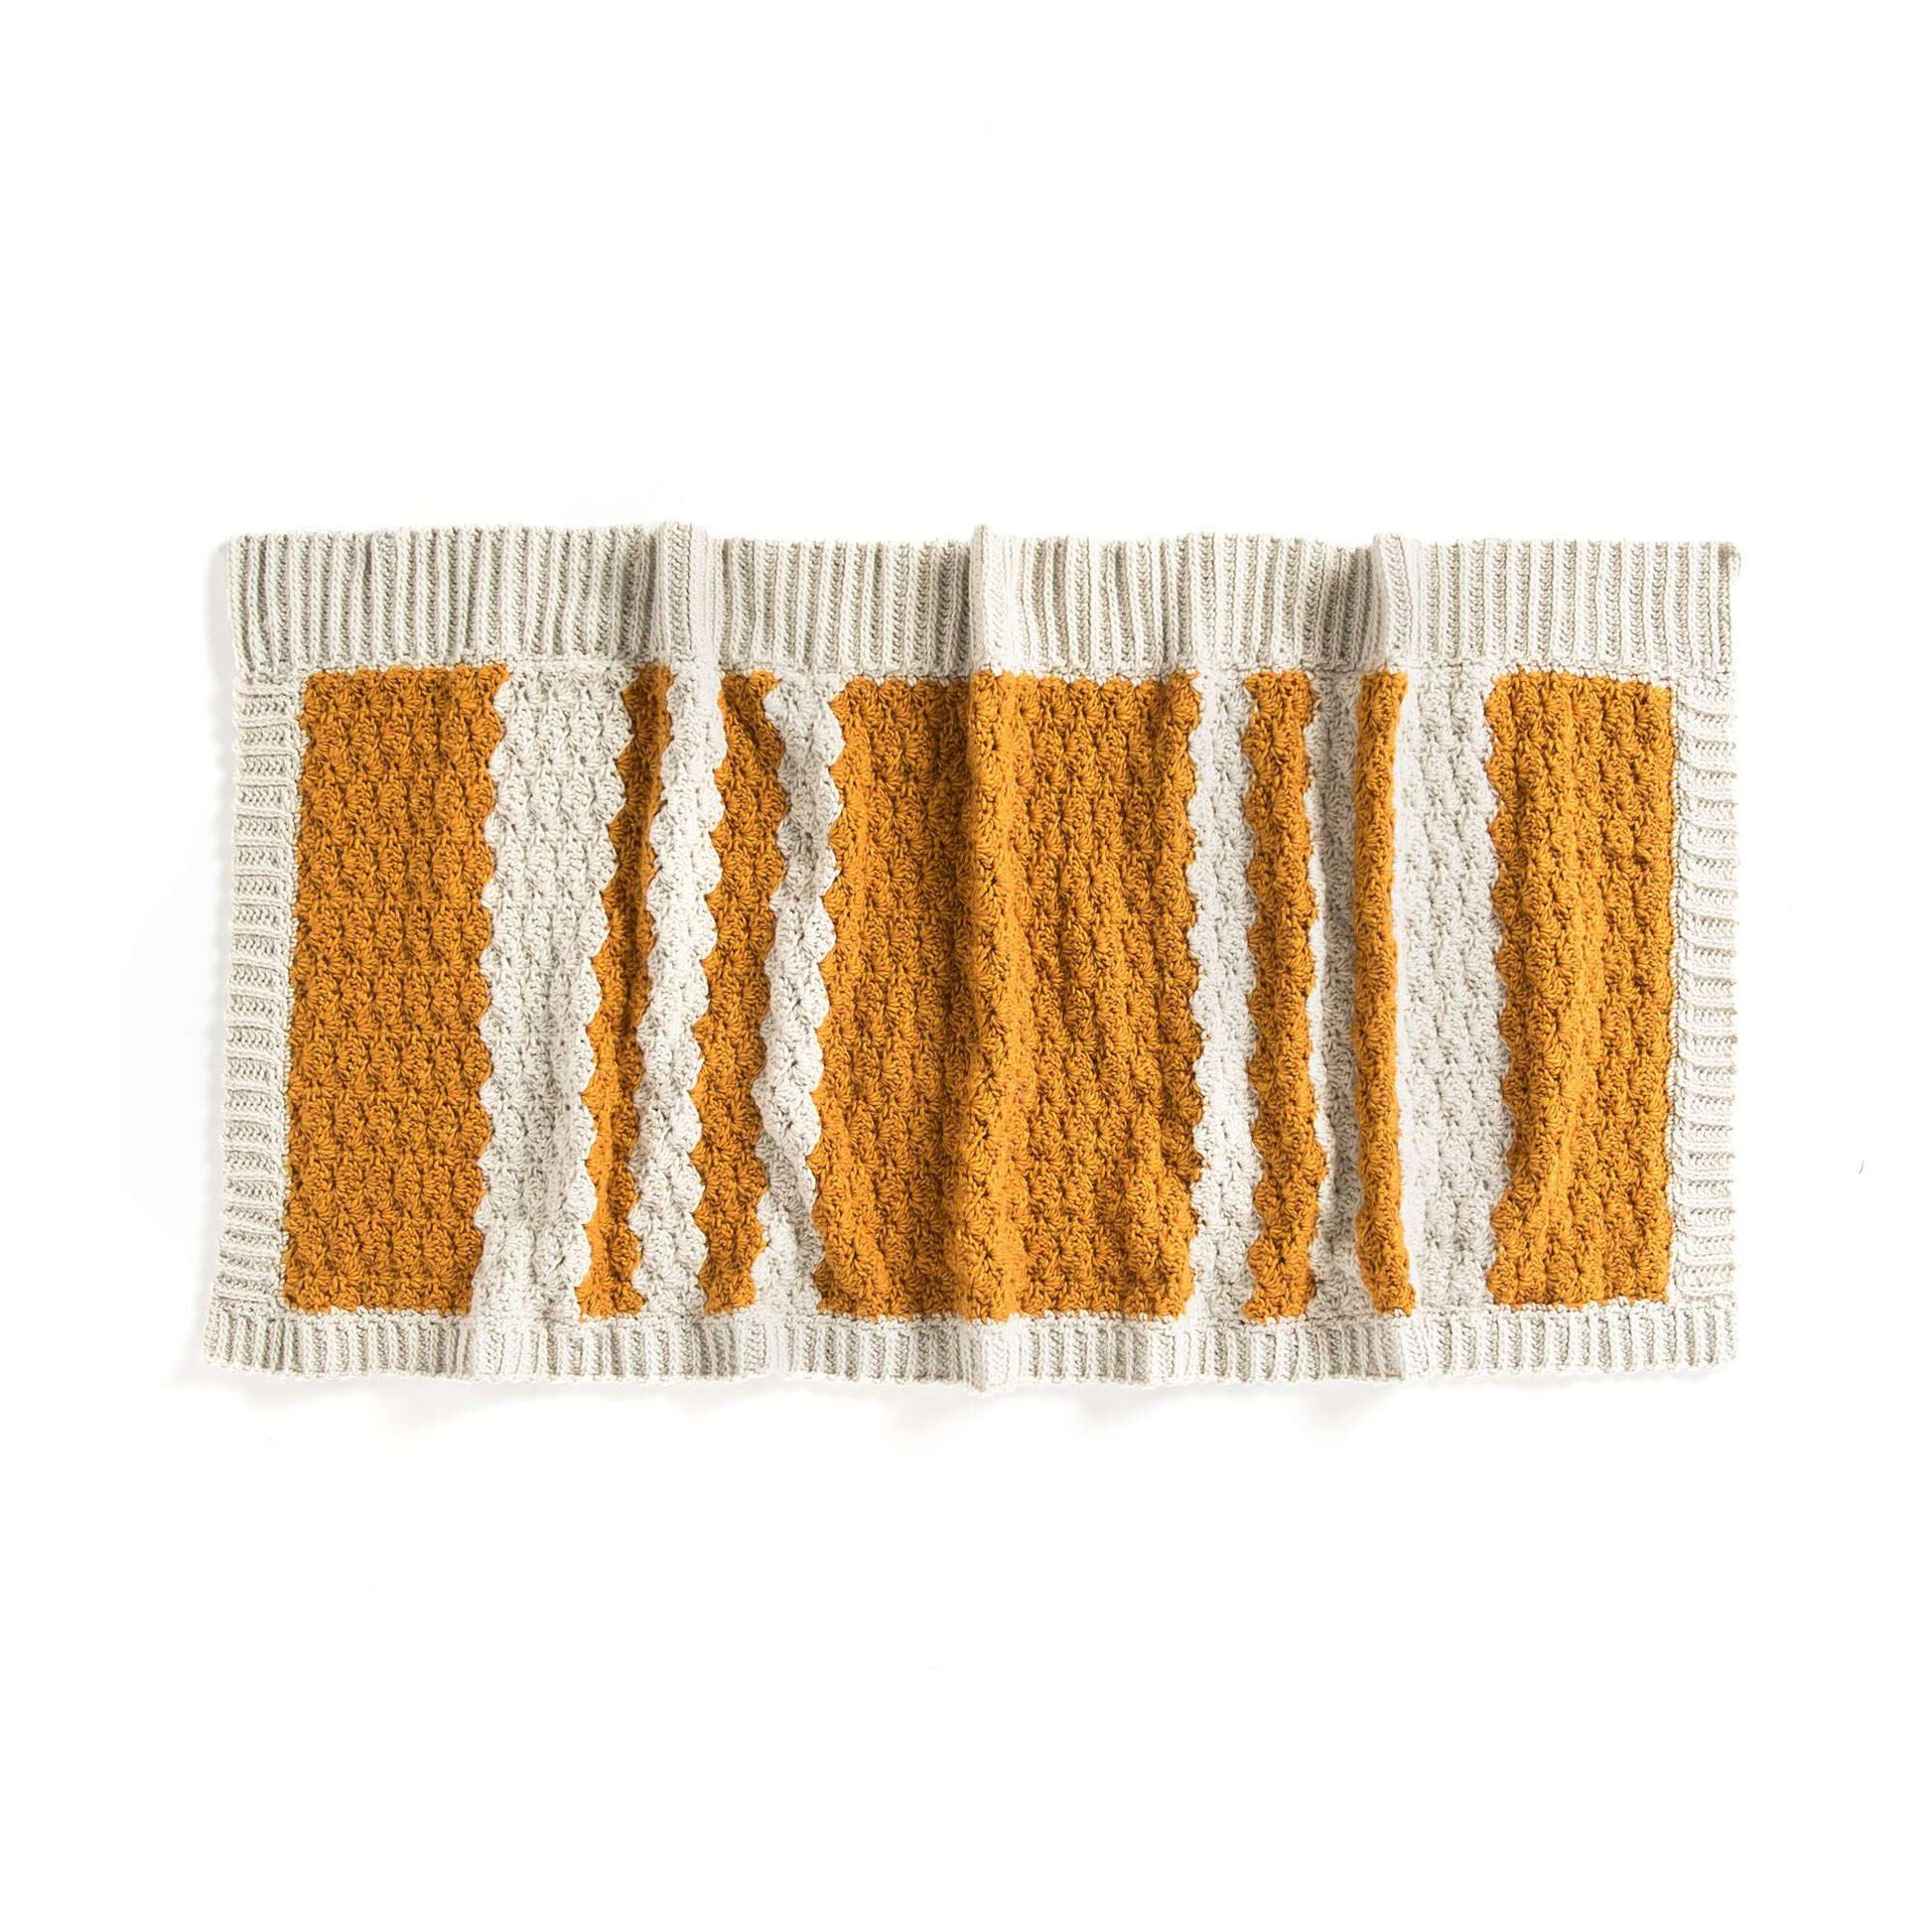 Free Patons Crochet Shell Stitch Wrap Pattern